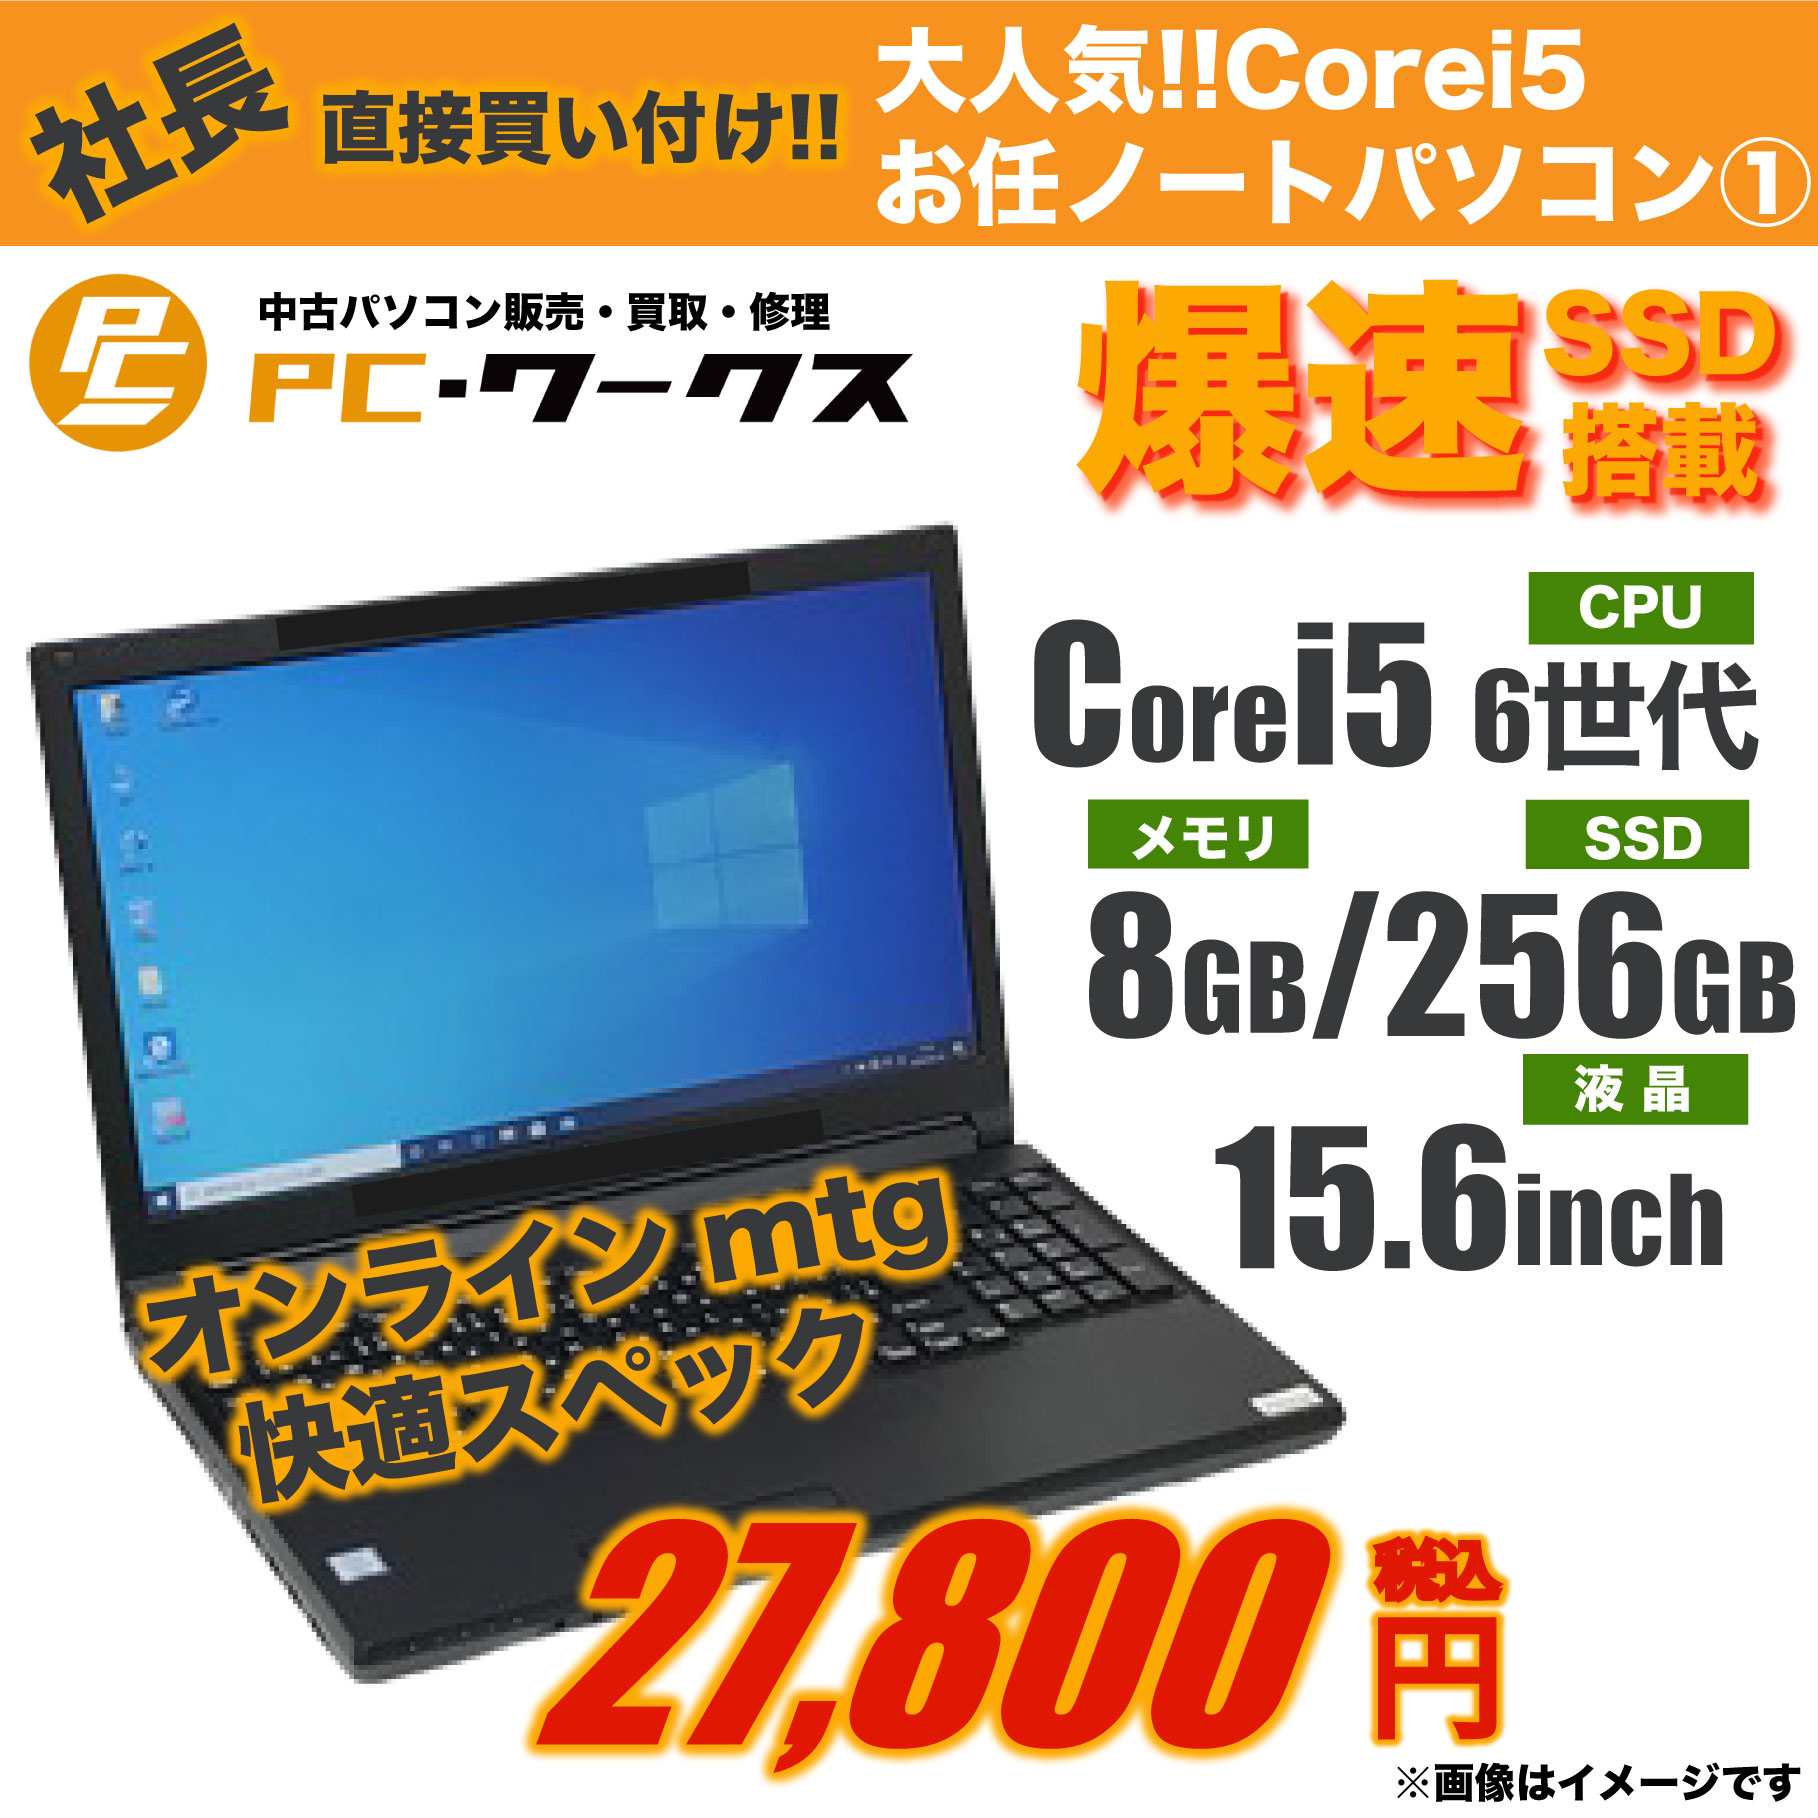 大人気 Corei5 お任せノートパソコン①15.6inch